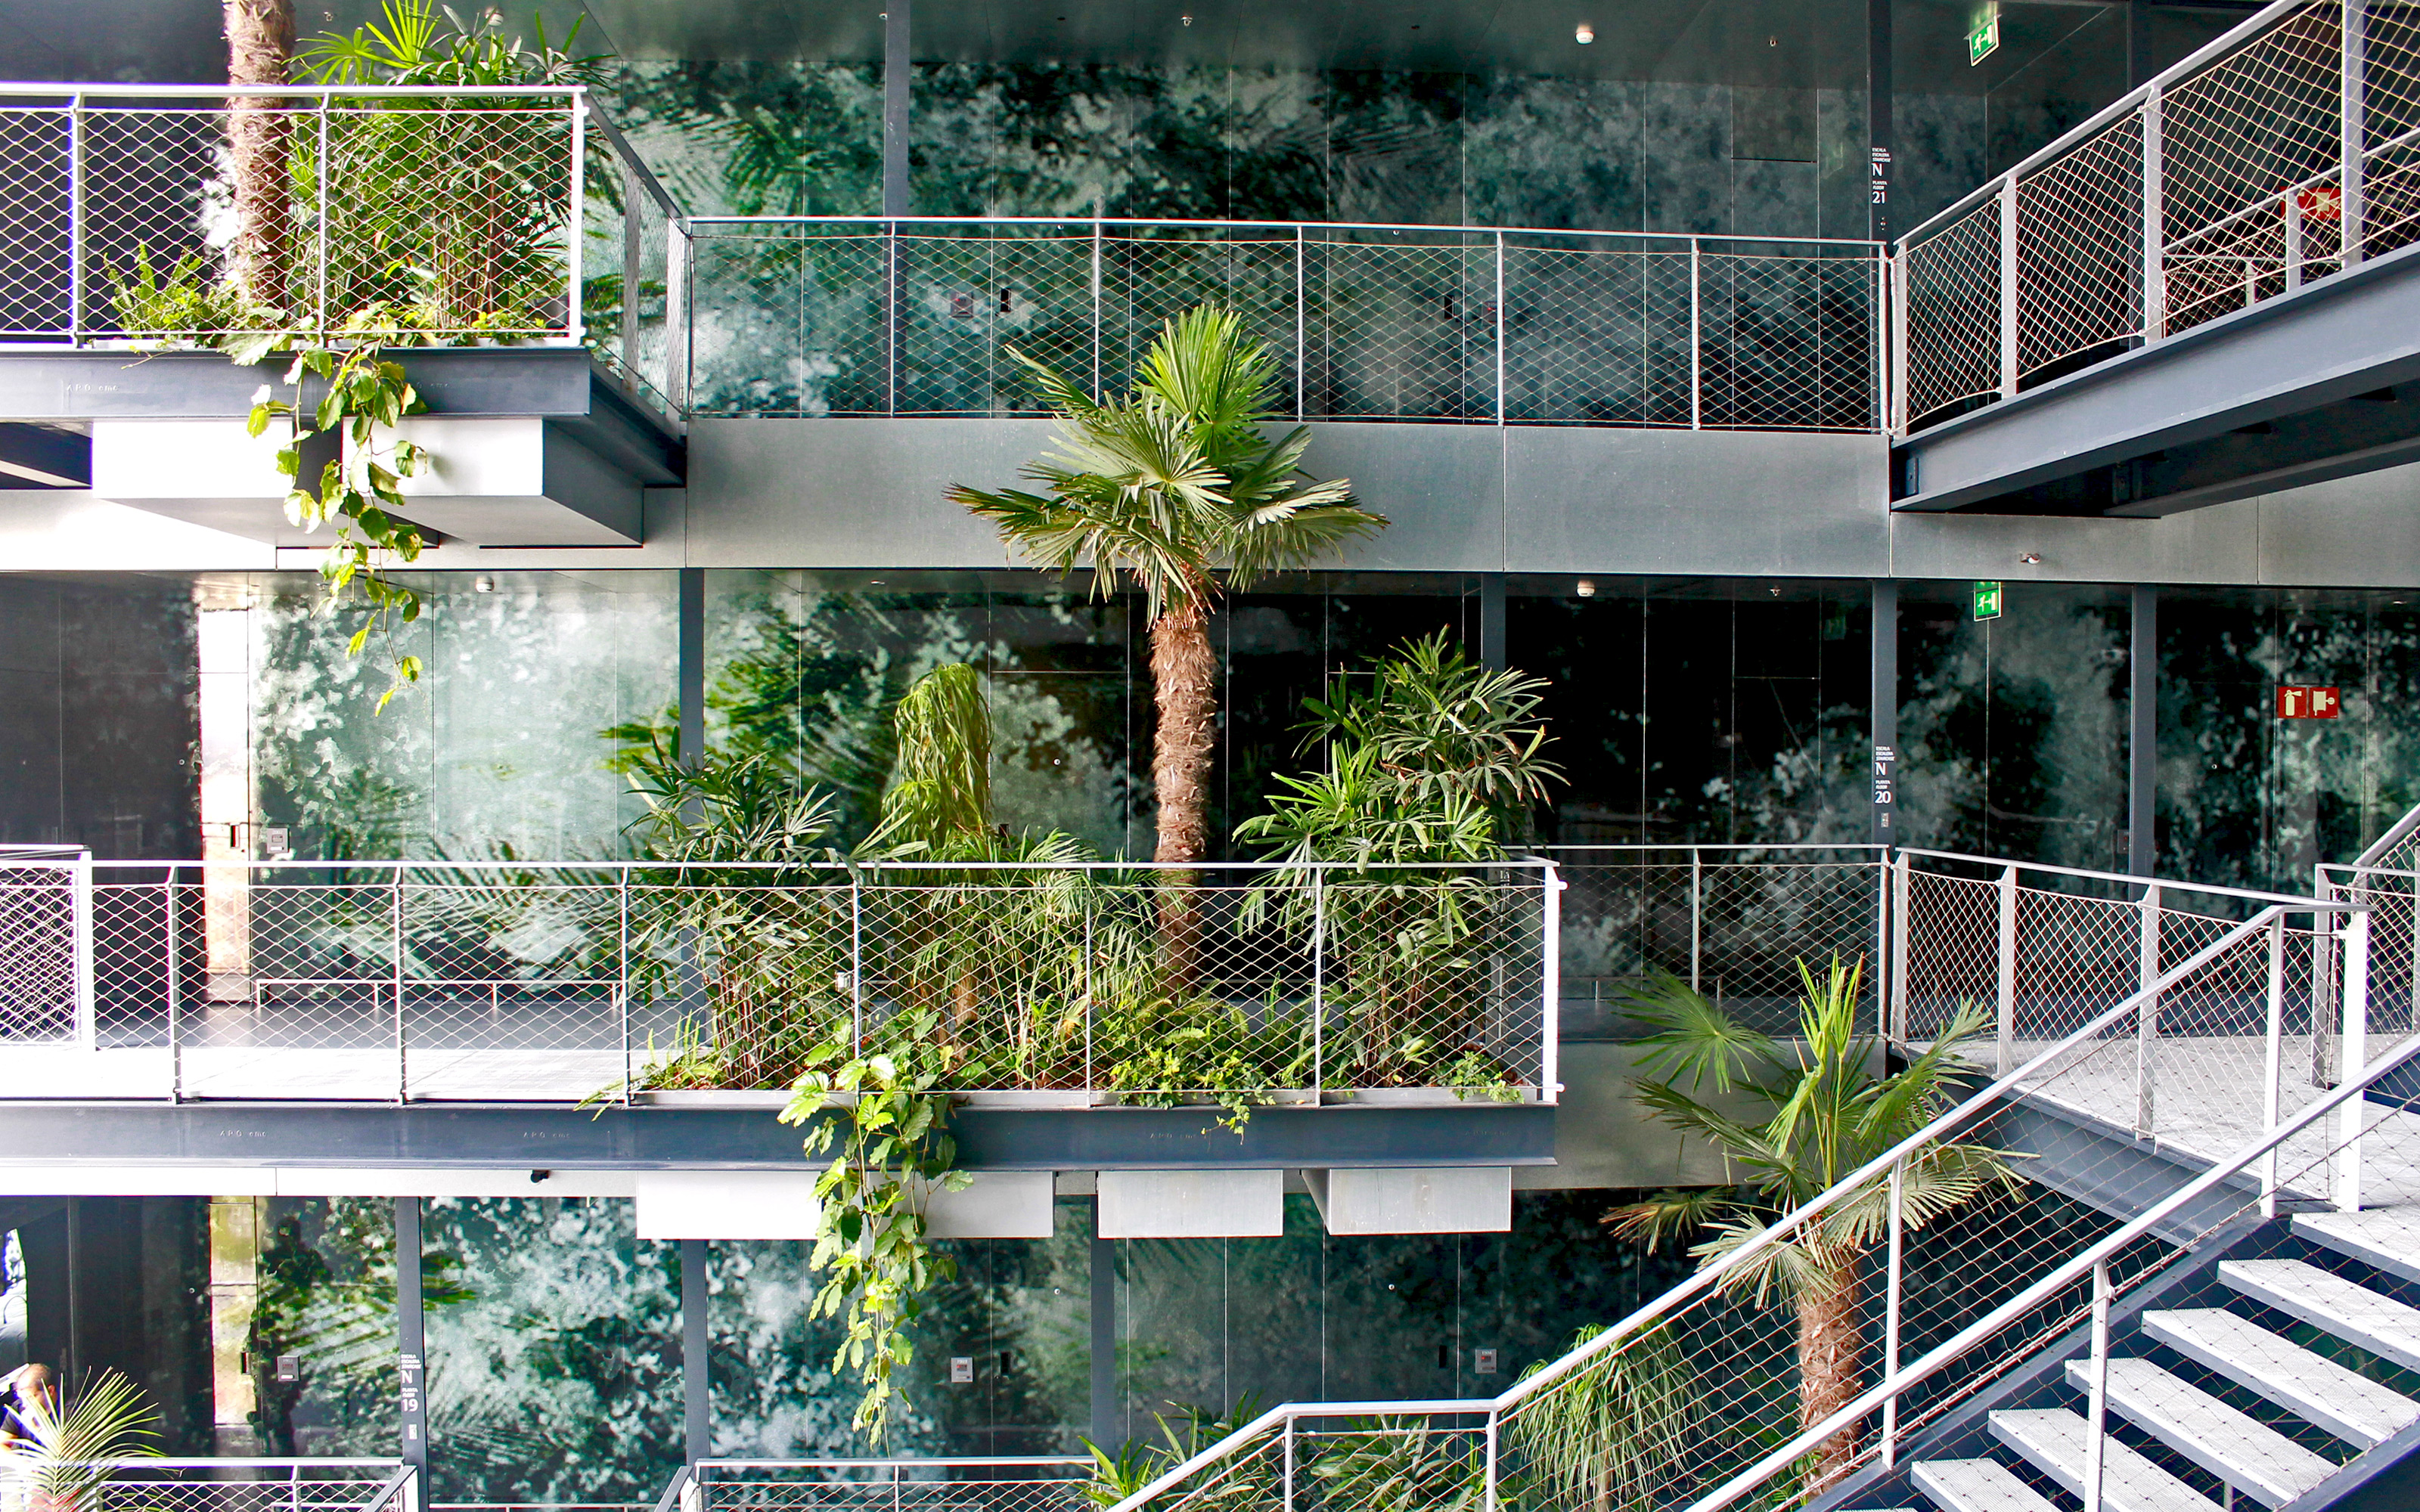 Un vestíbulo con palmeras y plantas tropical